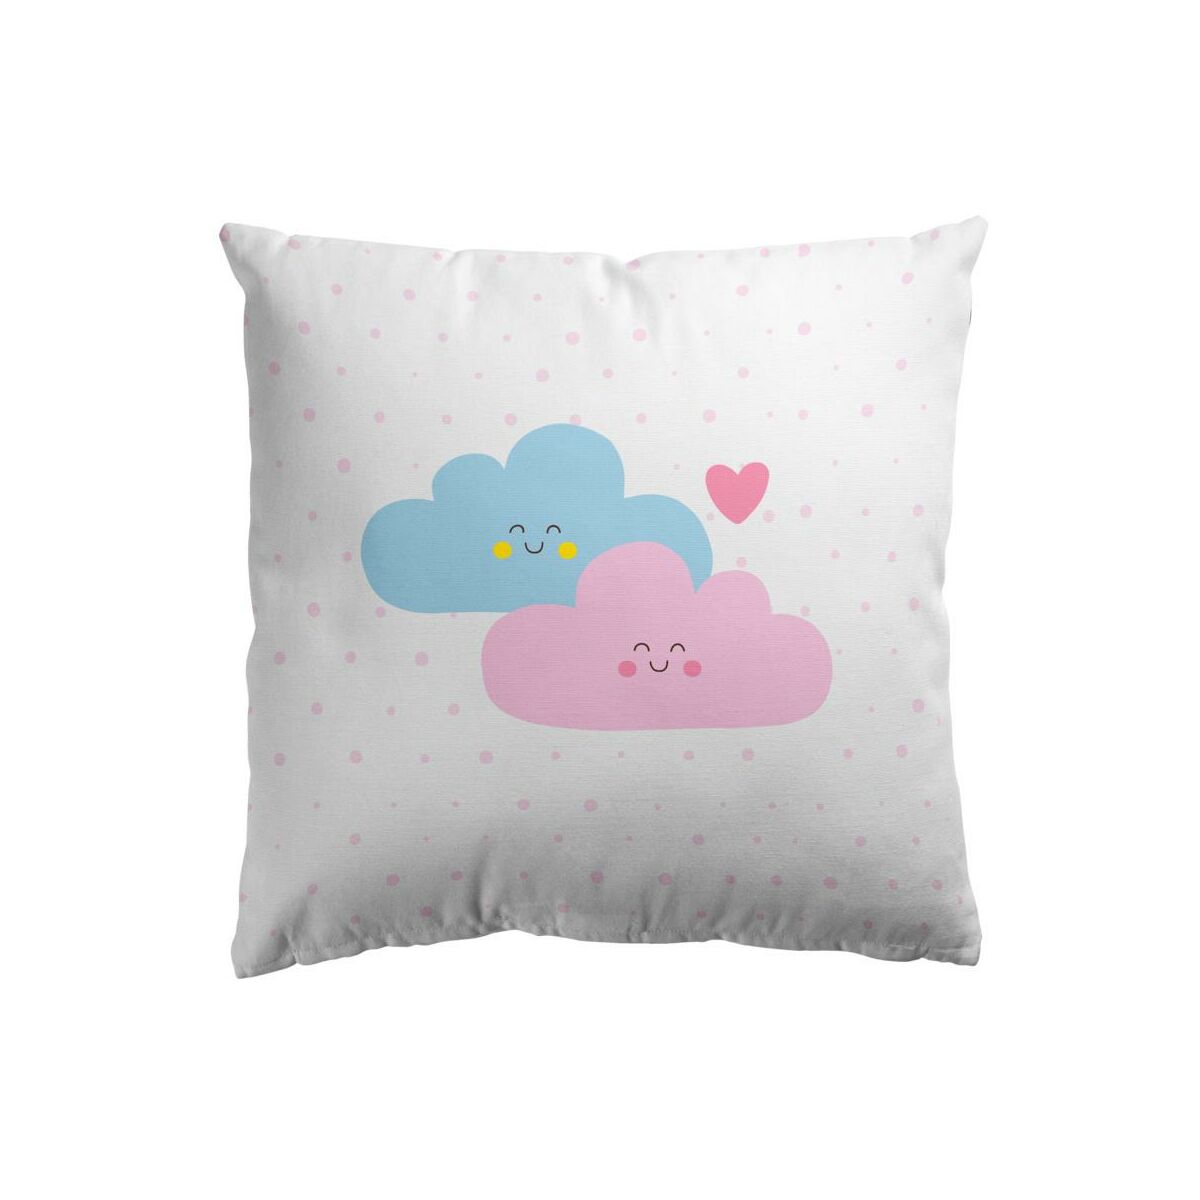 Poduszka bawełniana dla dzieci Schoolmania Chmurki różowo-niebieska 45 x 45 cm